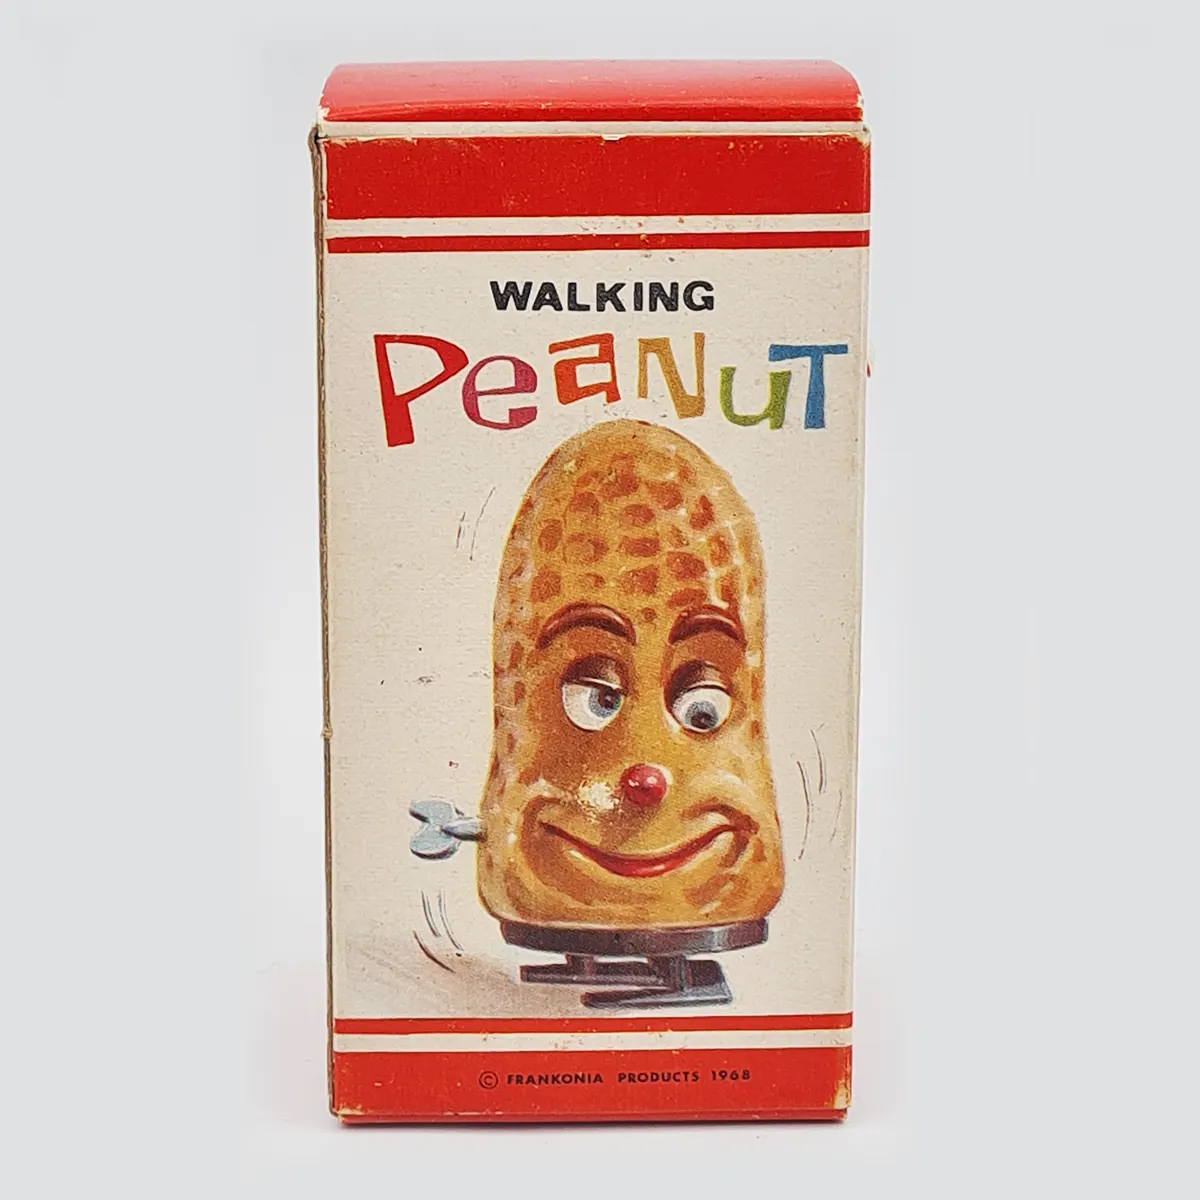 Walking peanut Frankonia Products 1968